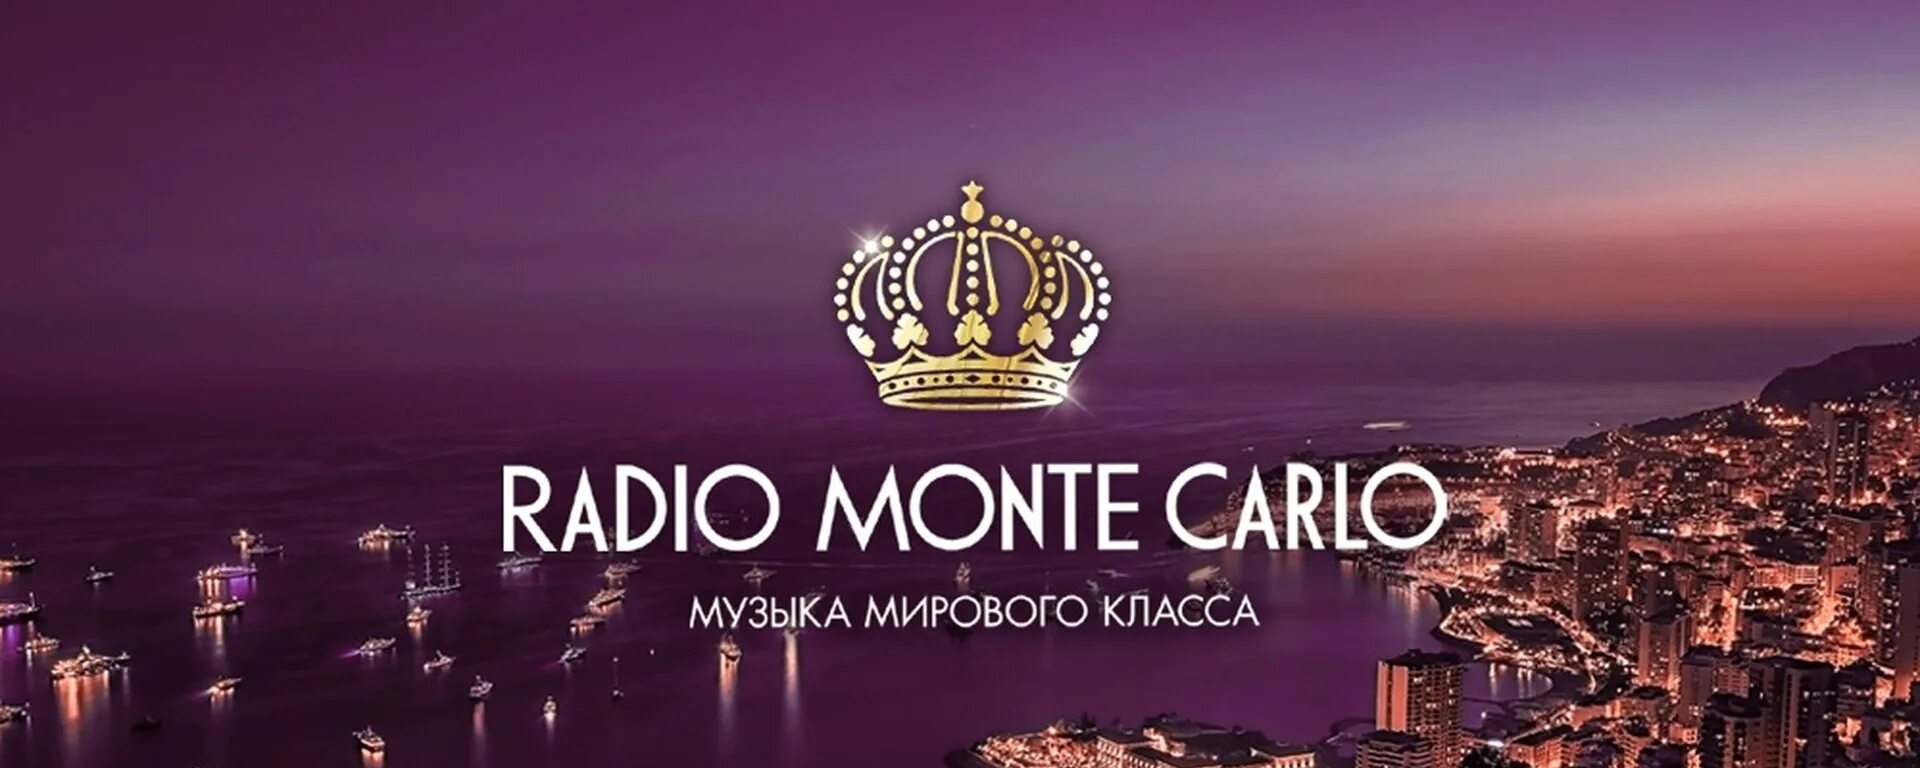 Радио монте карло частота в москве fm. Монте Карло радиостанция 105.9. Монте Карло лого. Радио Монте Карло лого. Радио Монте Карло Омск.